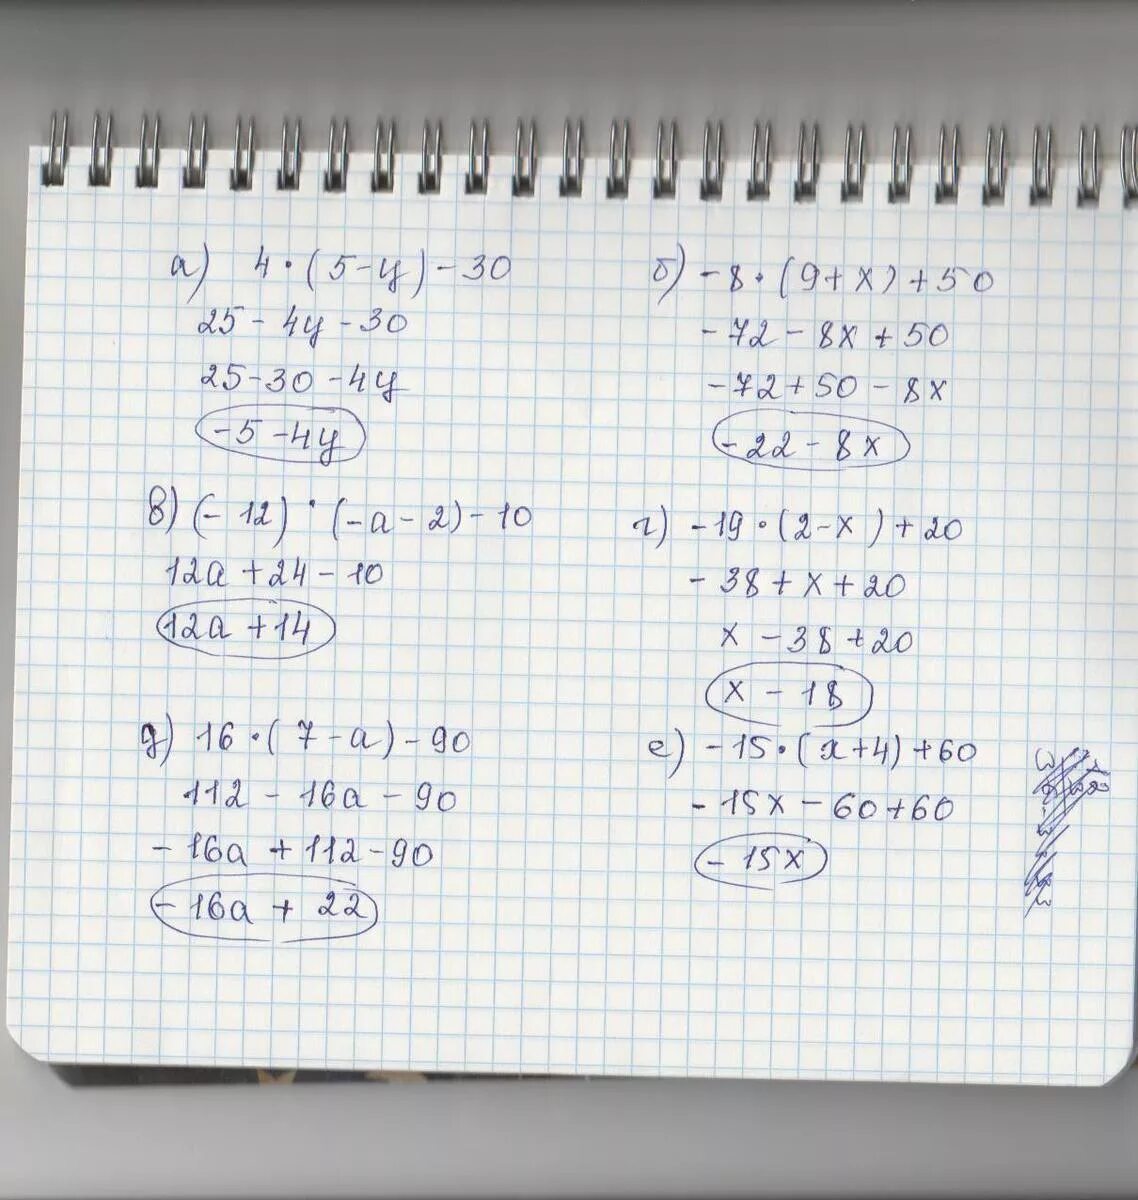 3 4x 12 решение. 20-3(Х-5)<16-7х. 5/4-Х+5/Х=10/5. Решение 5х+12=60. 4нвк 60-12-19.